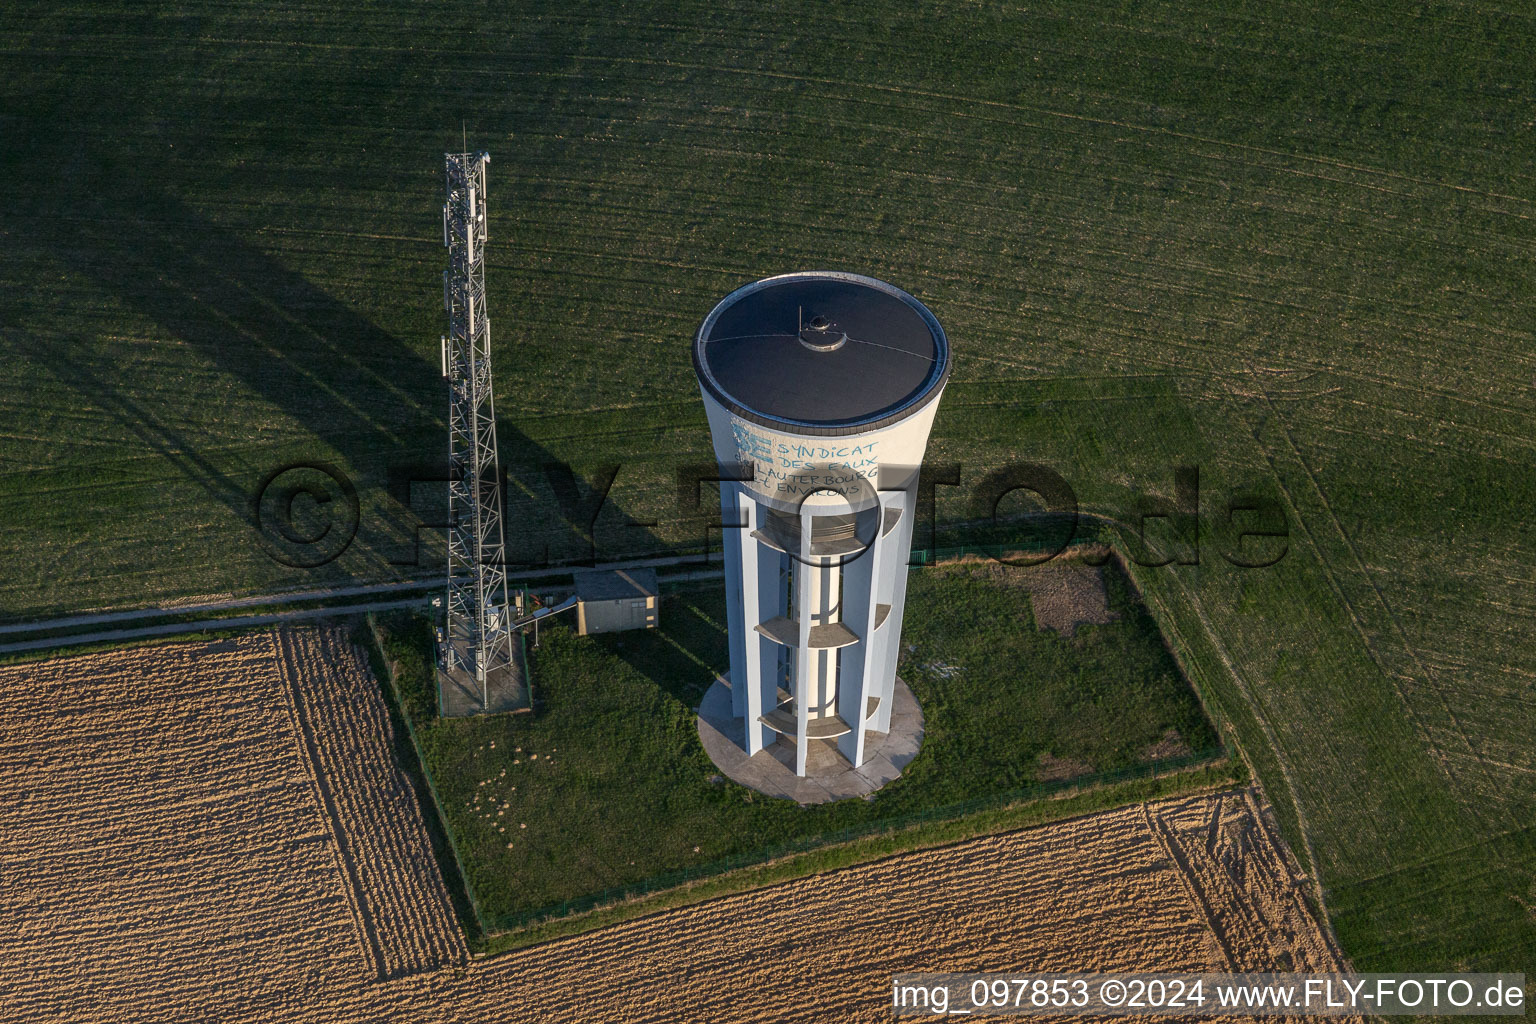 Bauwerk des bemalten Wasserturms und Mobilfunkmast in Wintzenbach in Grand Est im Bundesland Bas-Rhin, Frankreich